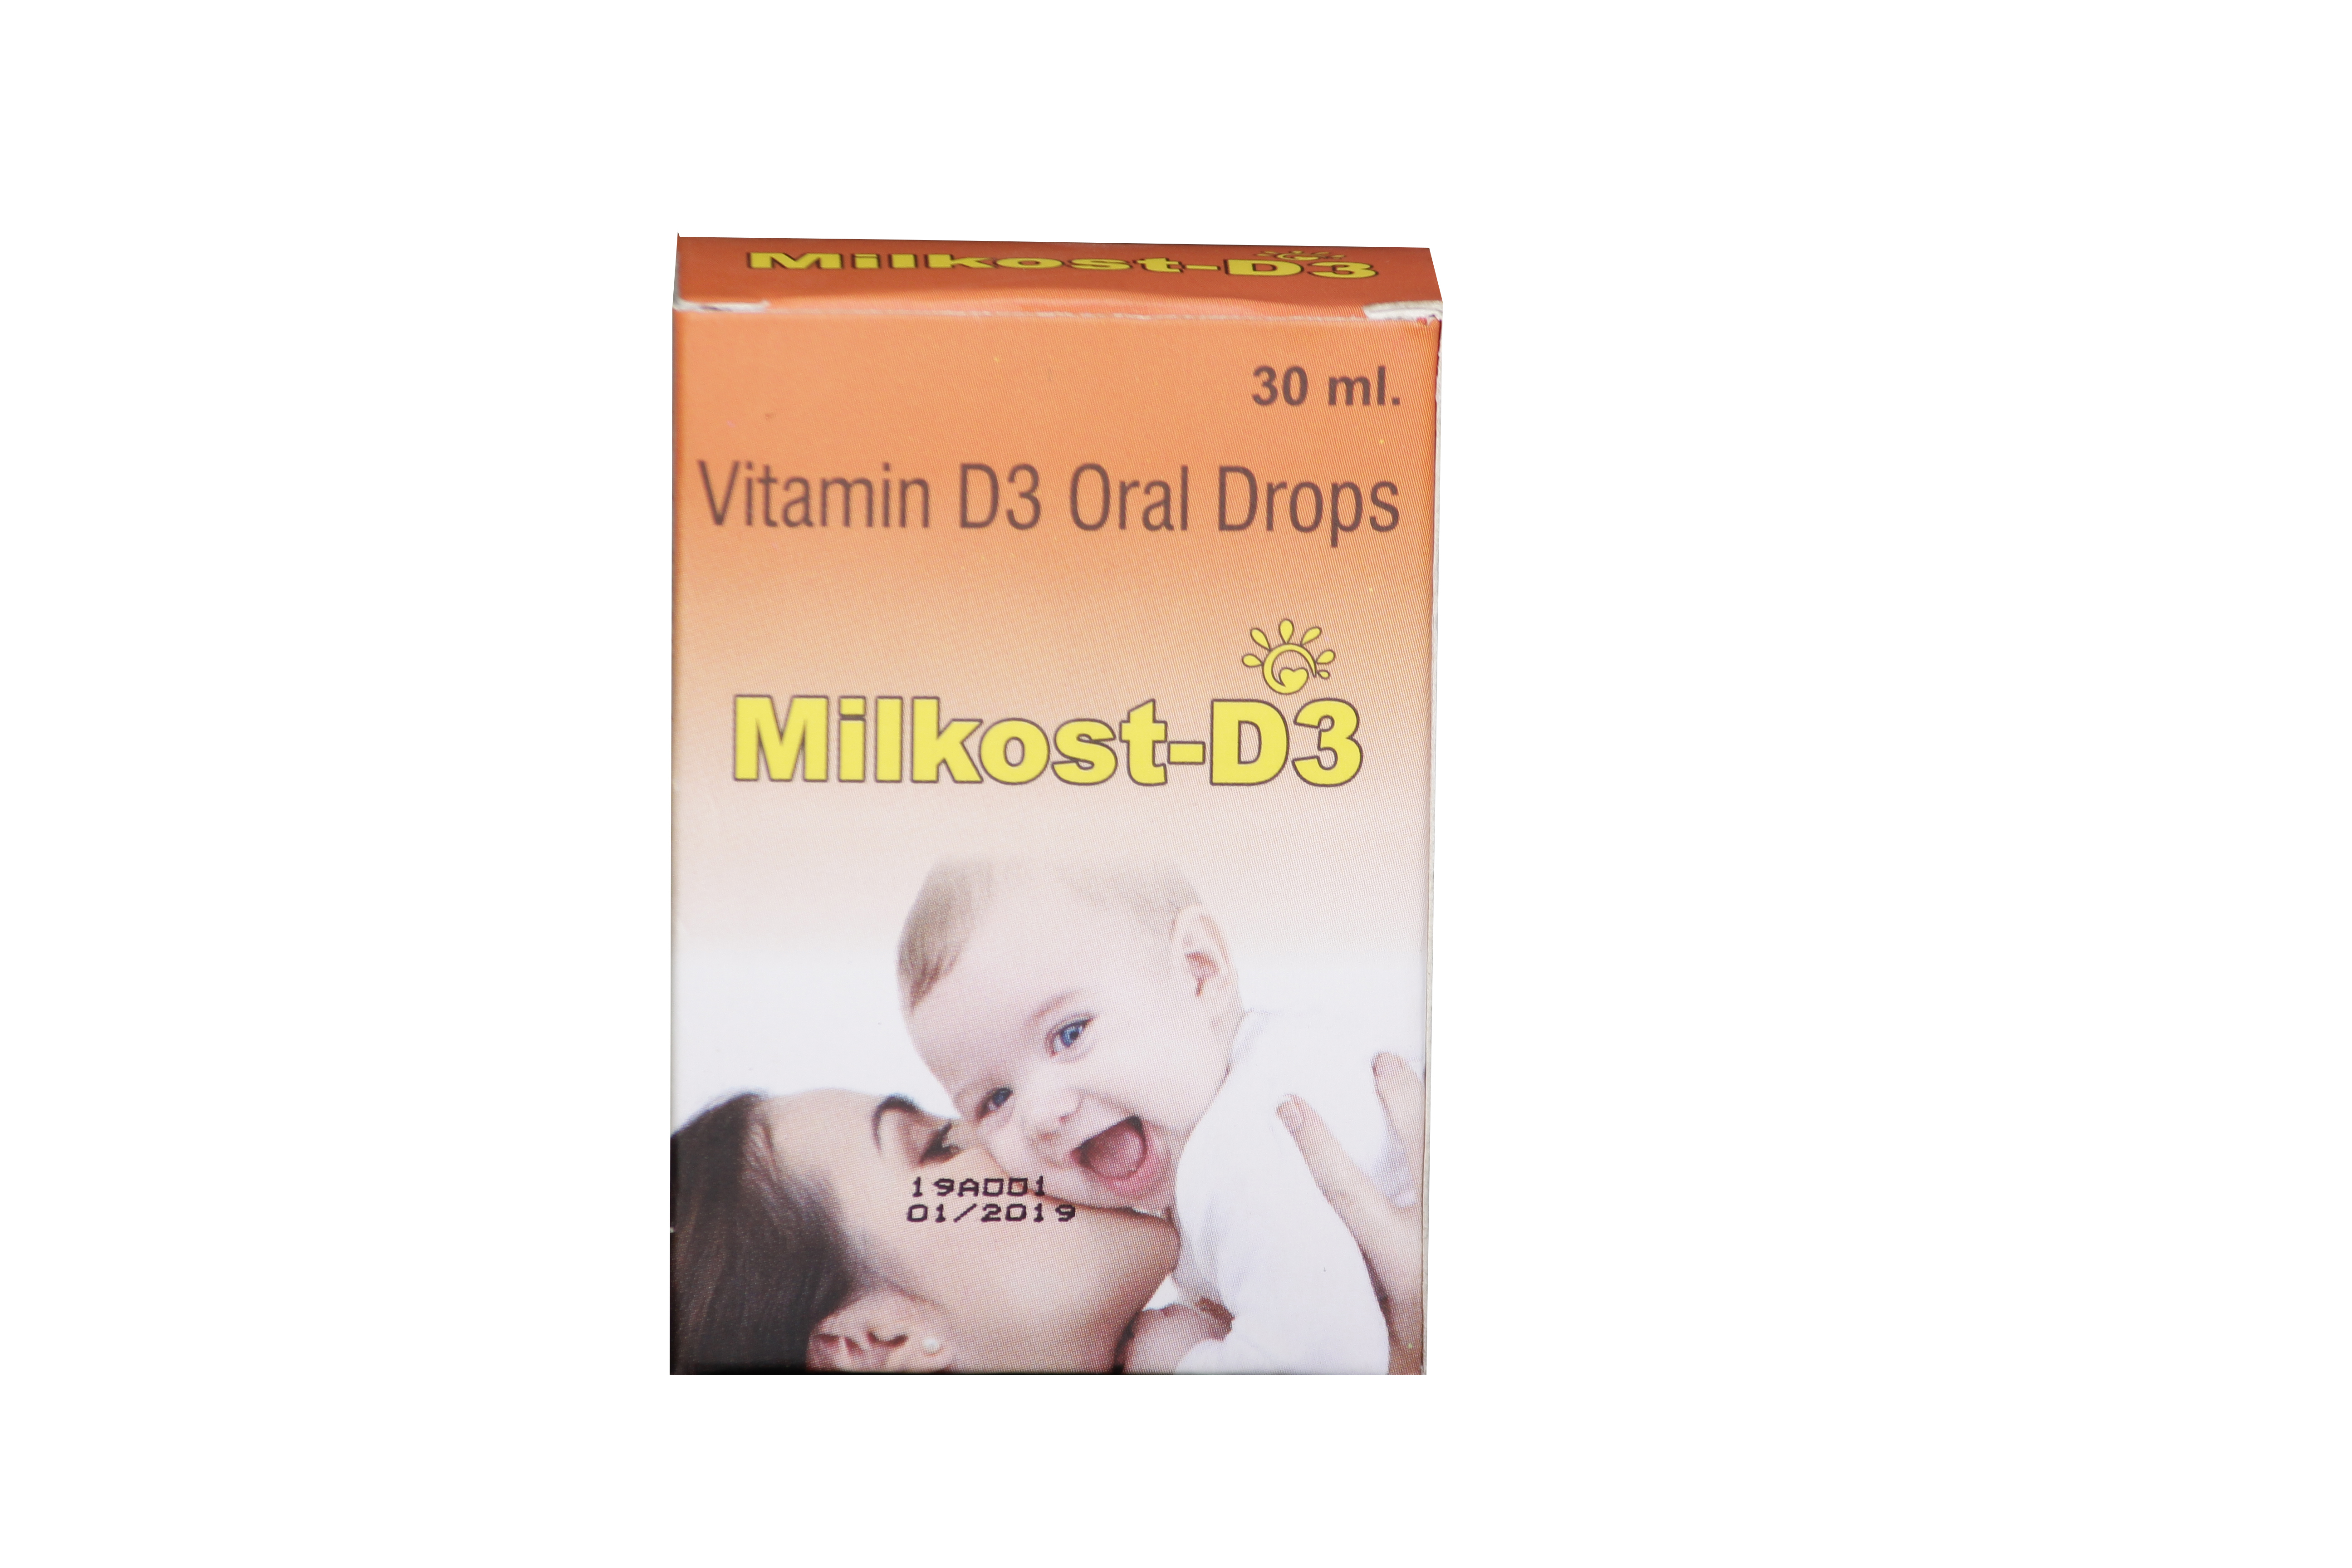 Vitamin D3 Oral Drops